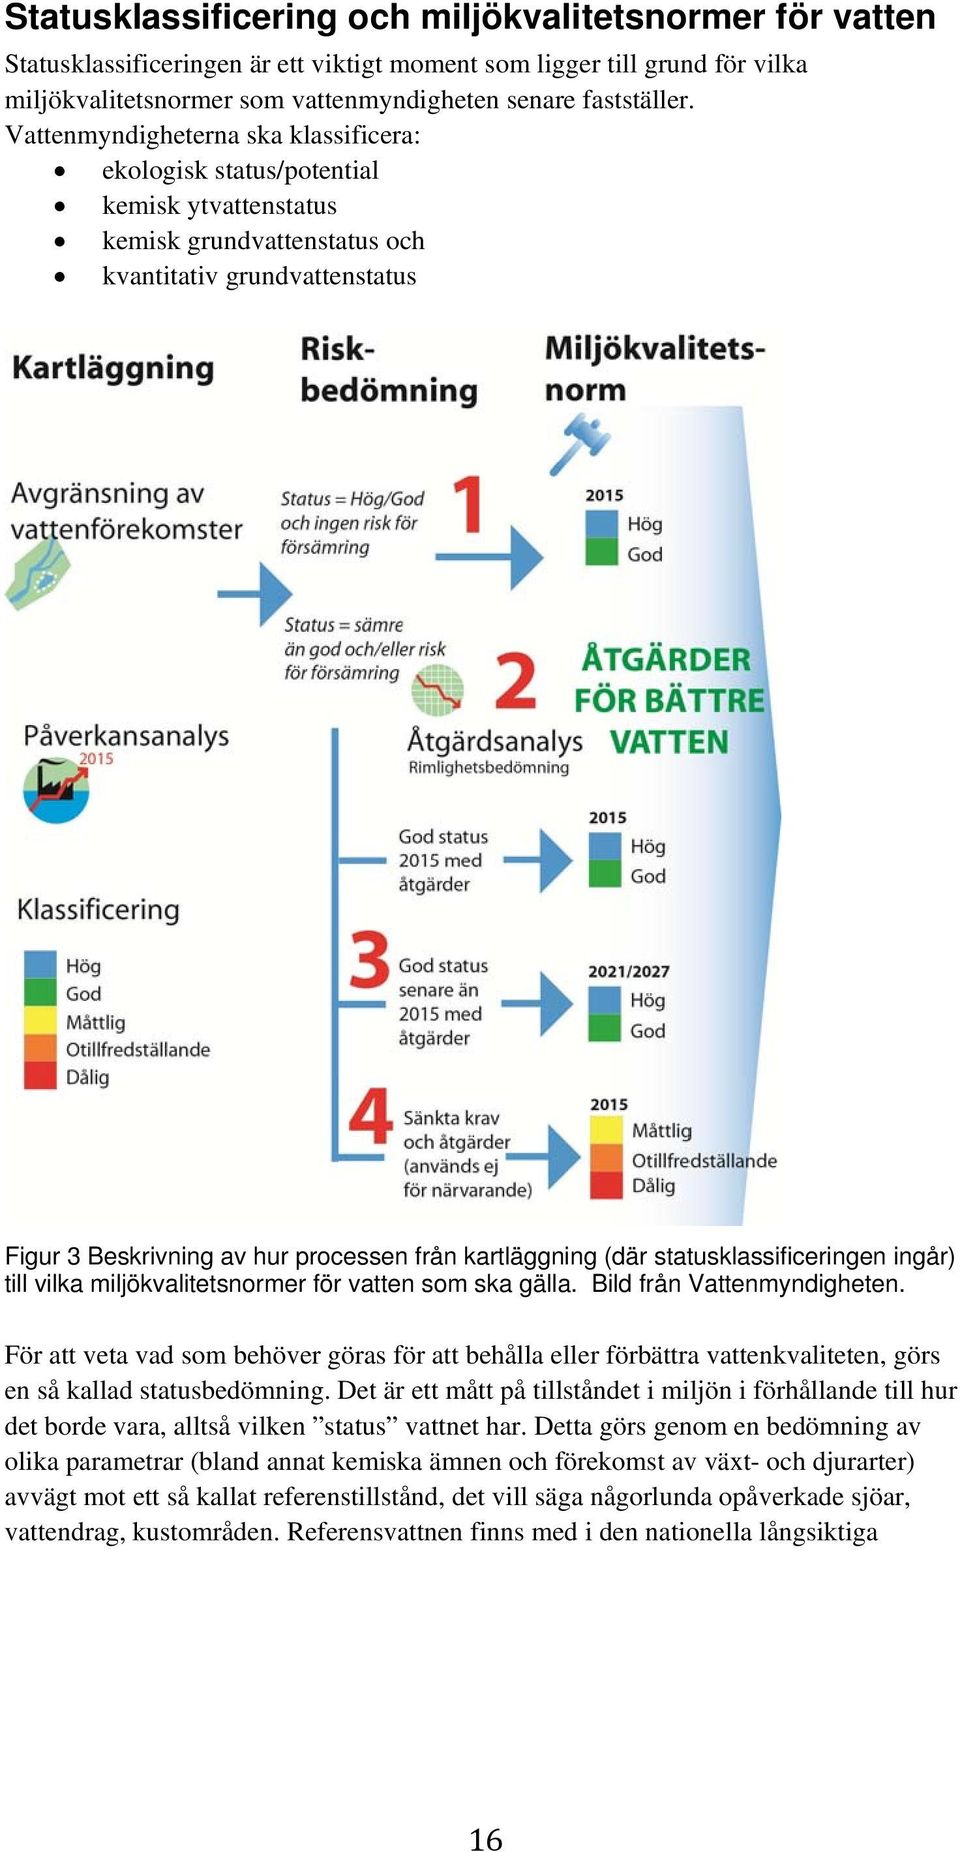 kartläggning (där statusklassificeringen ingår) till vilka miljökvalitetsnormer för vatten som ska gälla. Bild från Vattenmyndigheten.